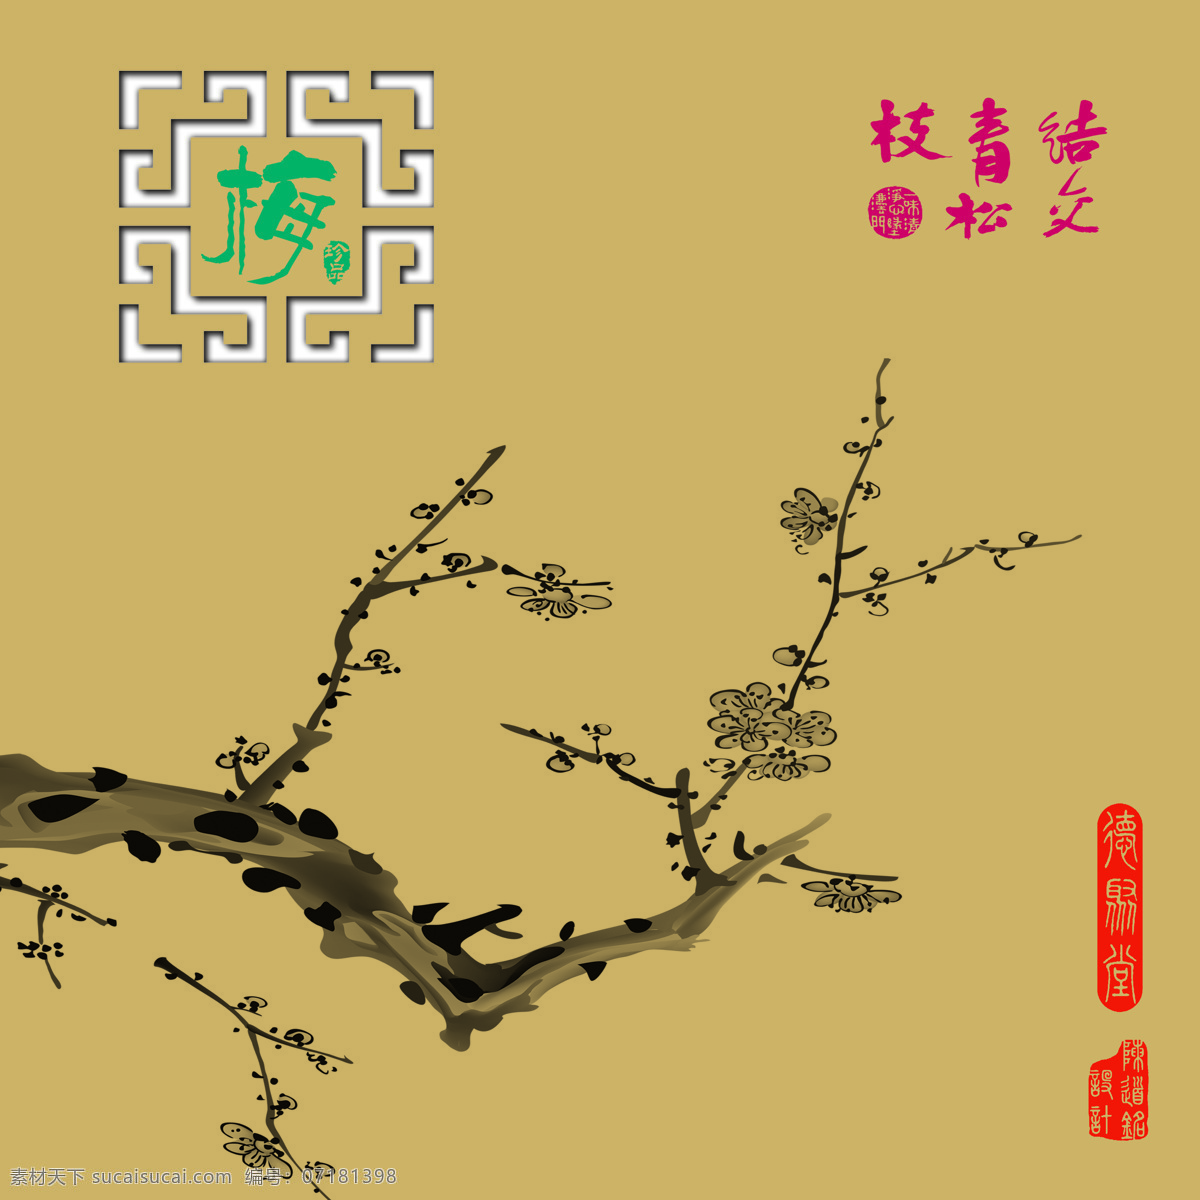 梅兰 竹 菊 背景 墙 艺术 个性 中国画 背景墙 效果图 山水 花卉 印章